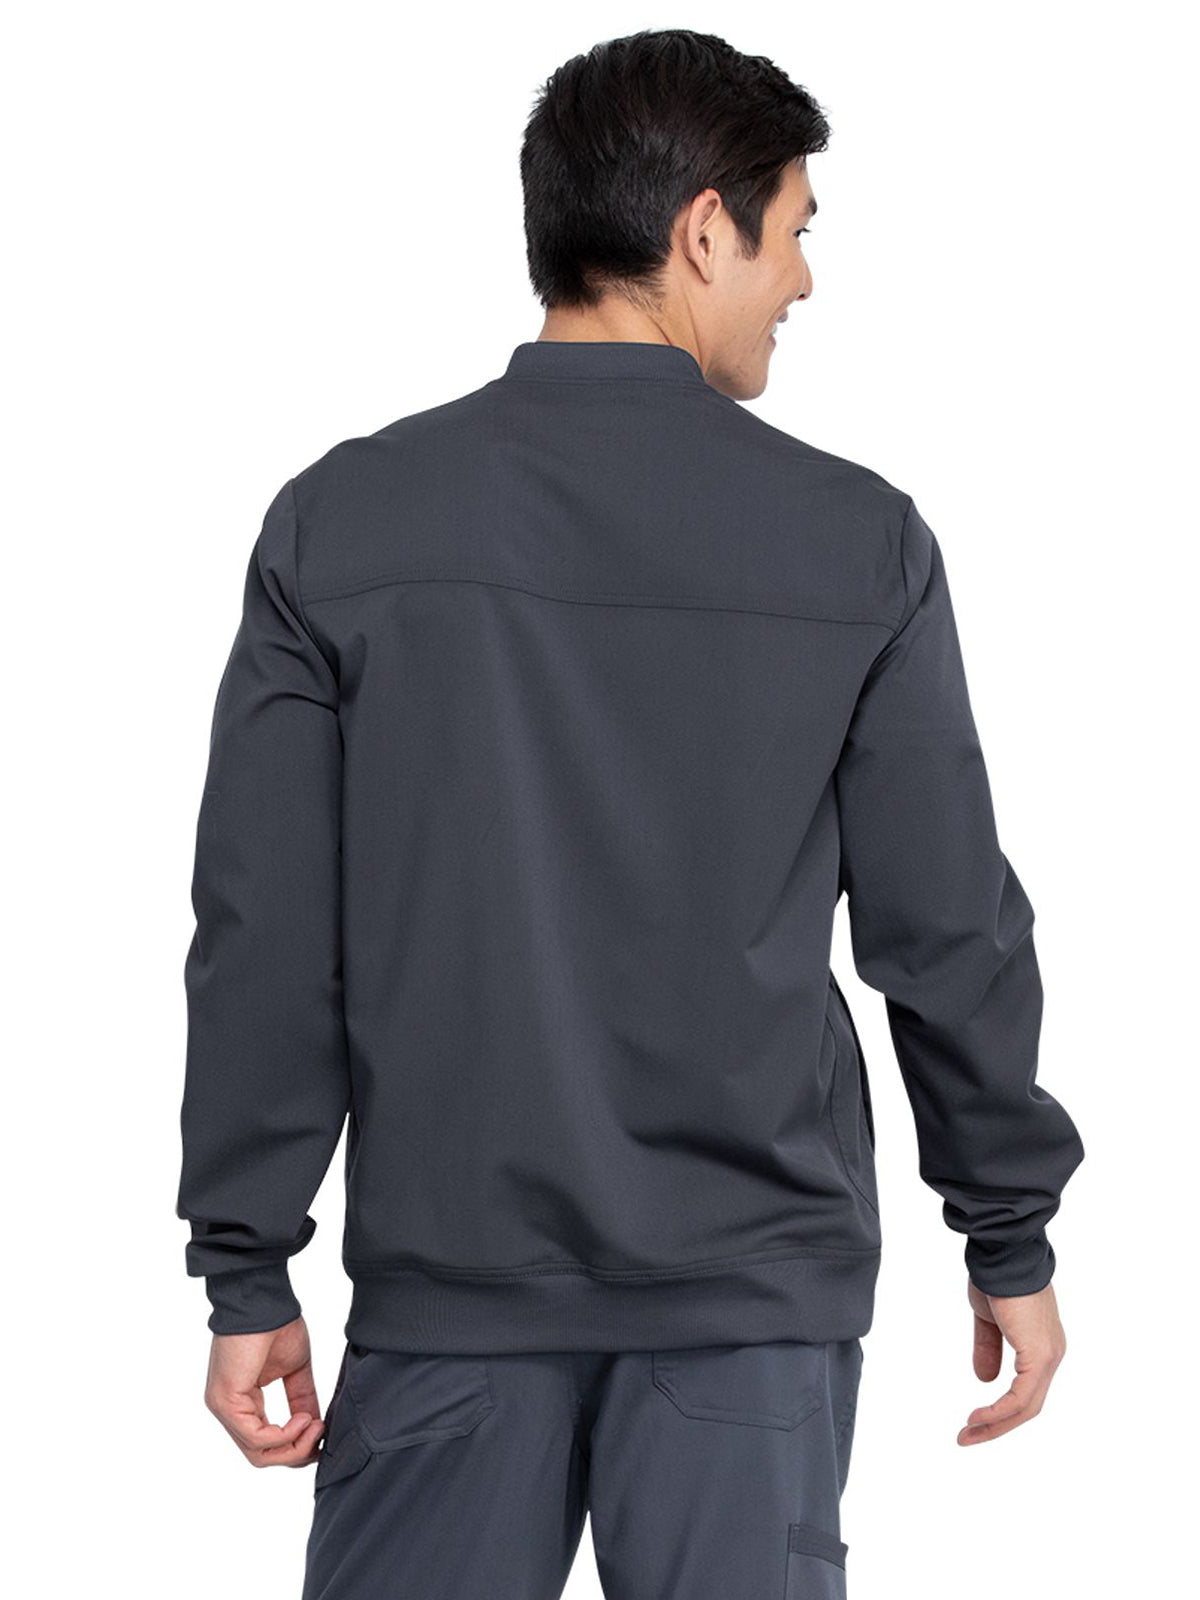 Men's 5-Pocket Zip Front Scrub Jacket - DK370 - Pewter